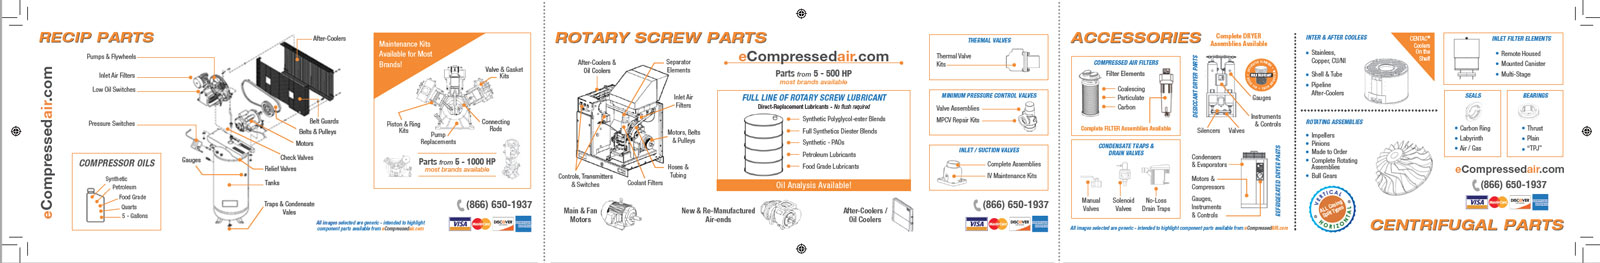 SMD-ecompressed-air-pocket-brochure-inside